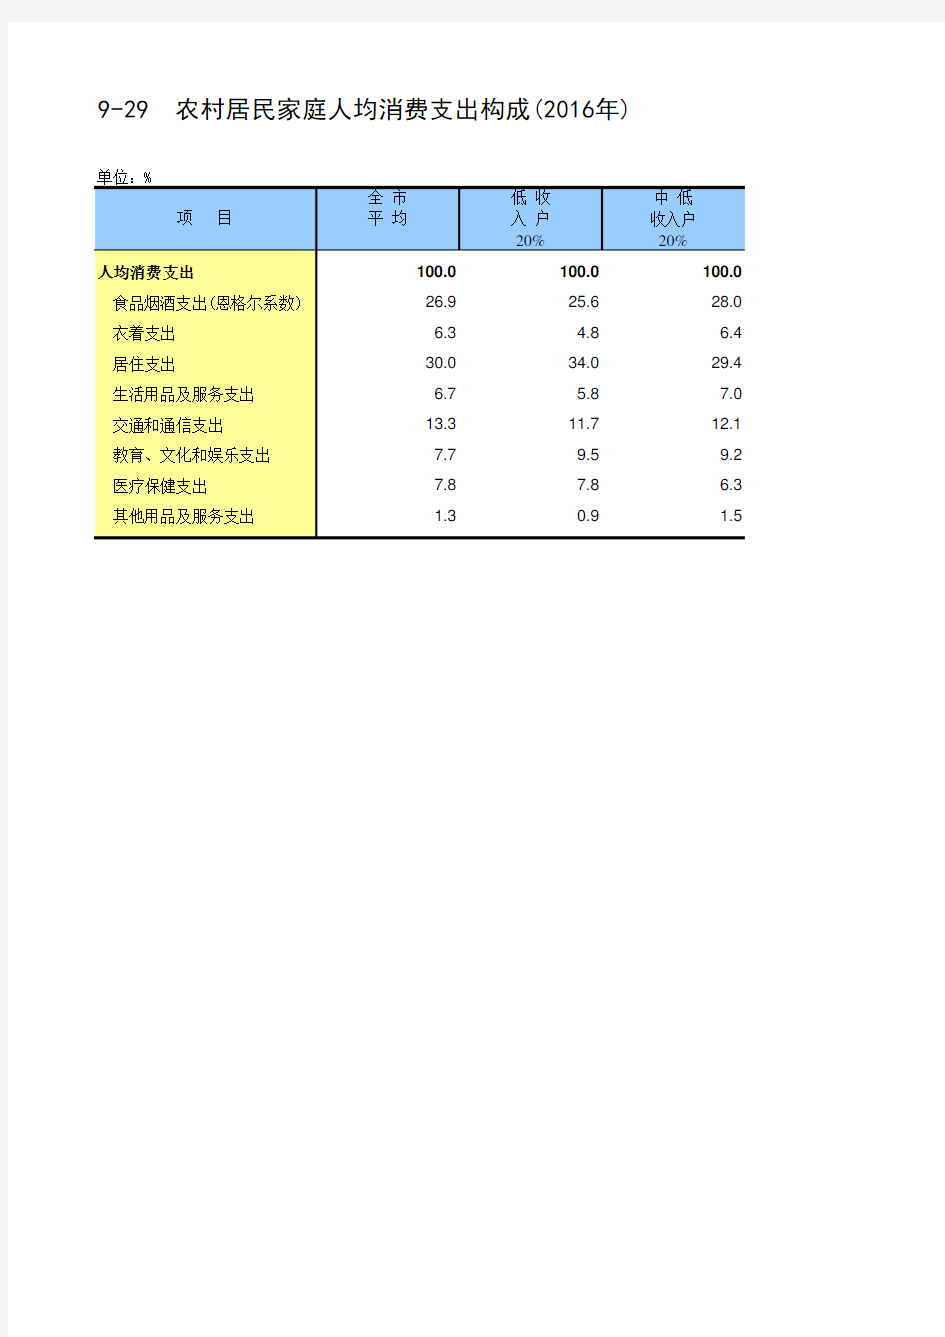 北京社会经济发展指标统计年鉴2017：9-29  农村居民家庭人均消费支出构成2016年